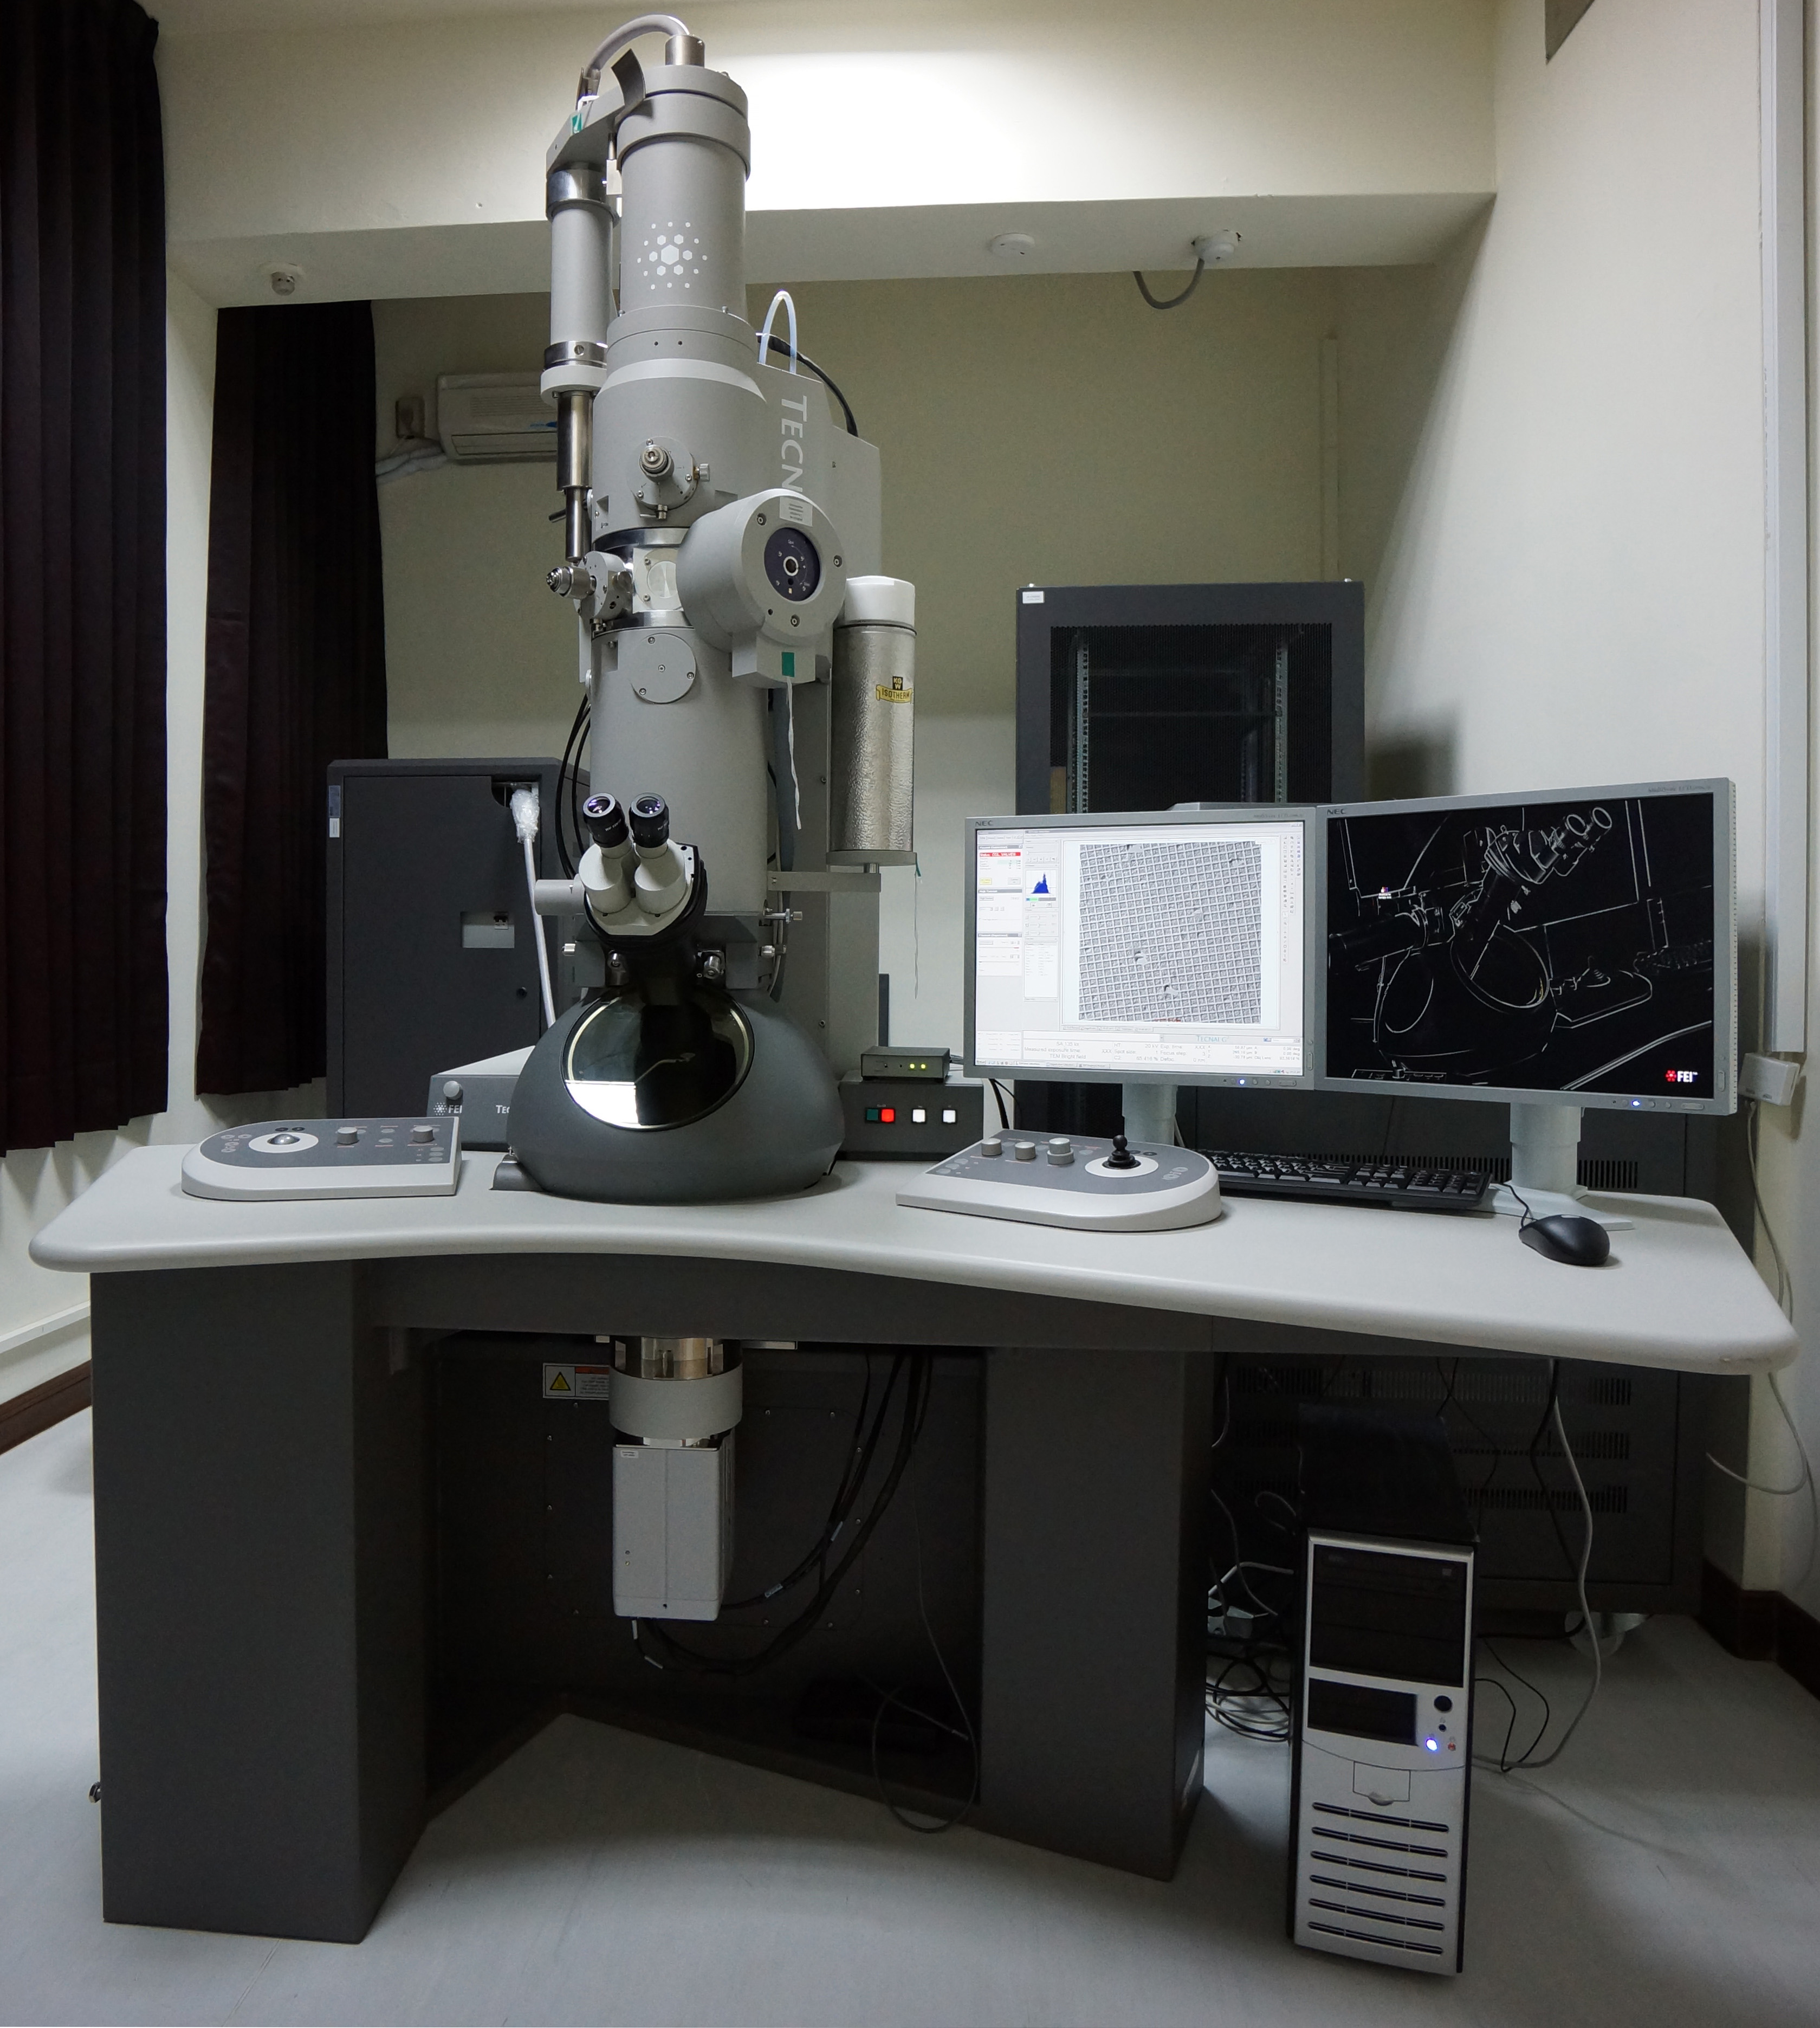 細胞生物學核心實驗室—電子顯微鏡部門導覽簡介